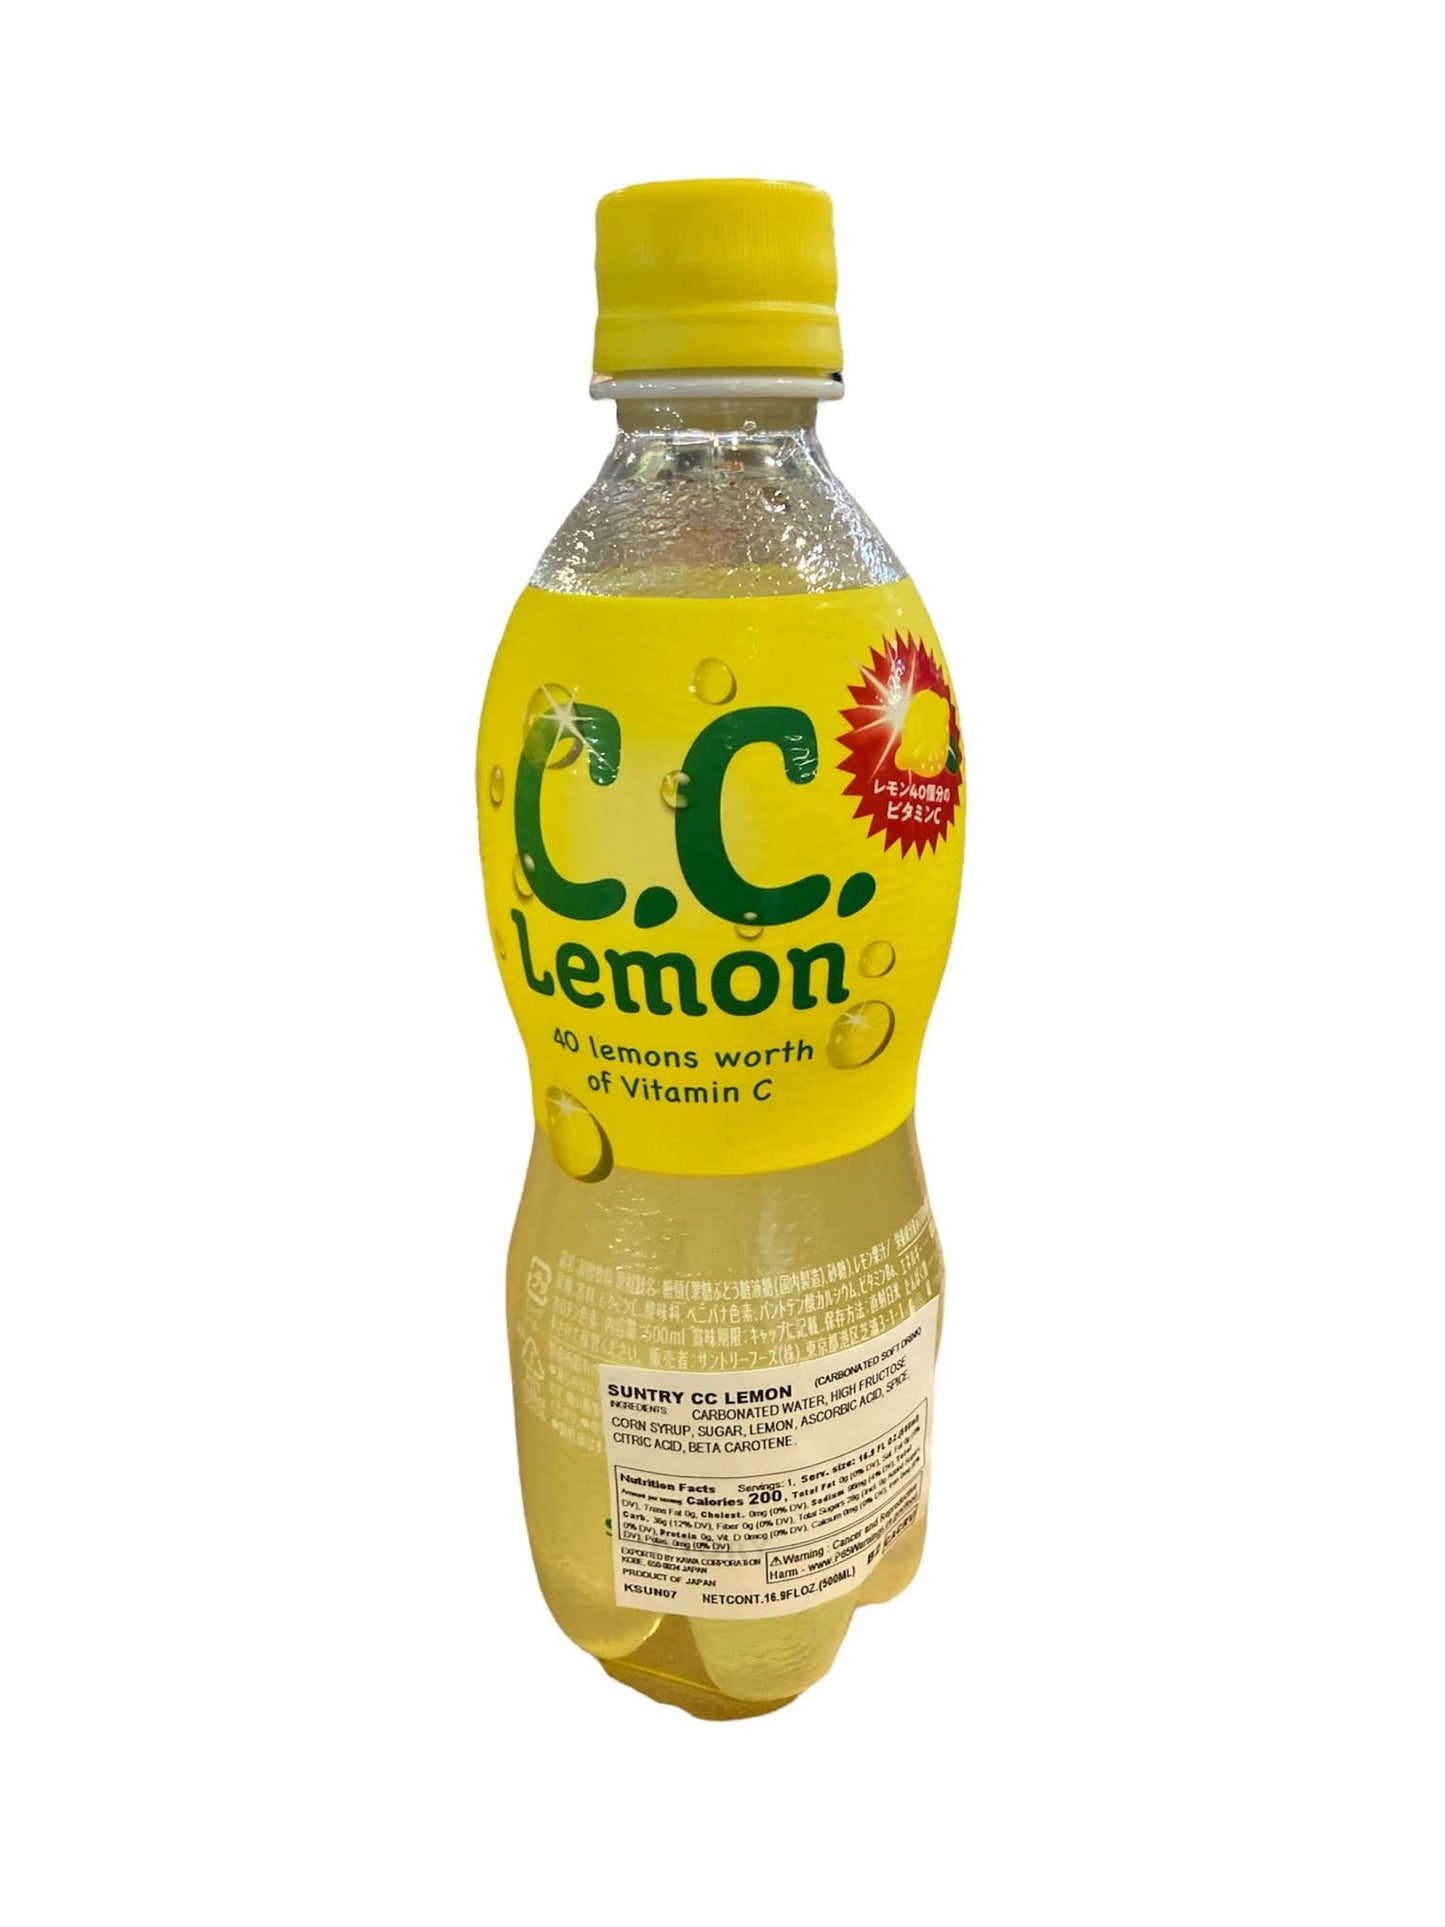 Suntory CC Lemon, soft drink, lemon (Japan)